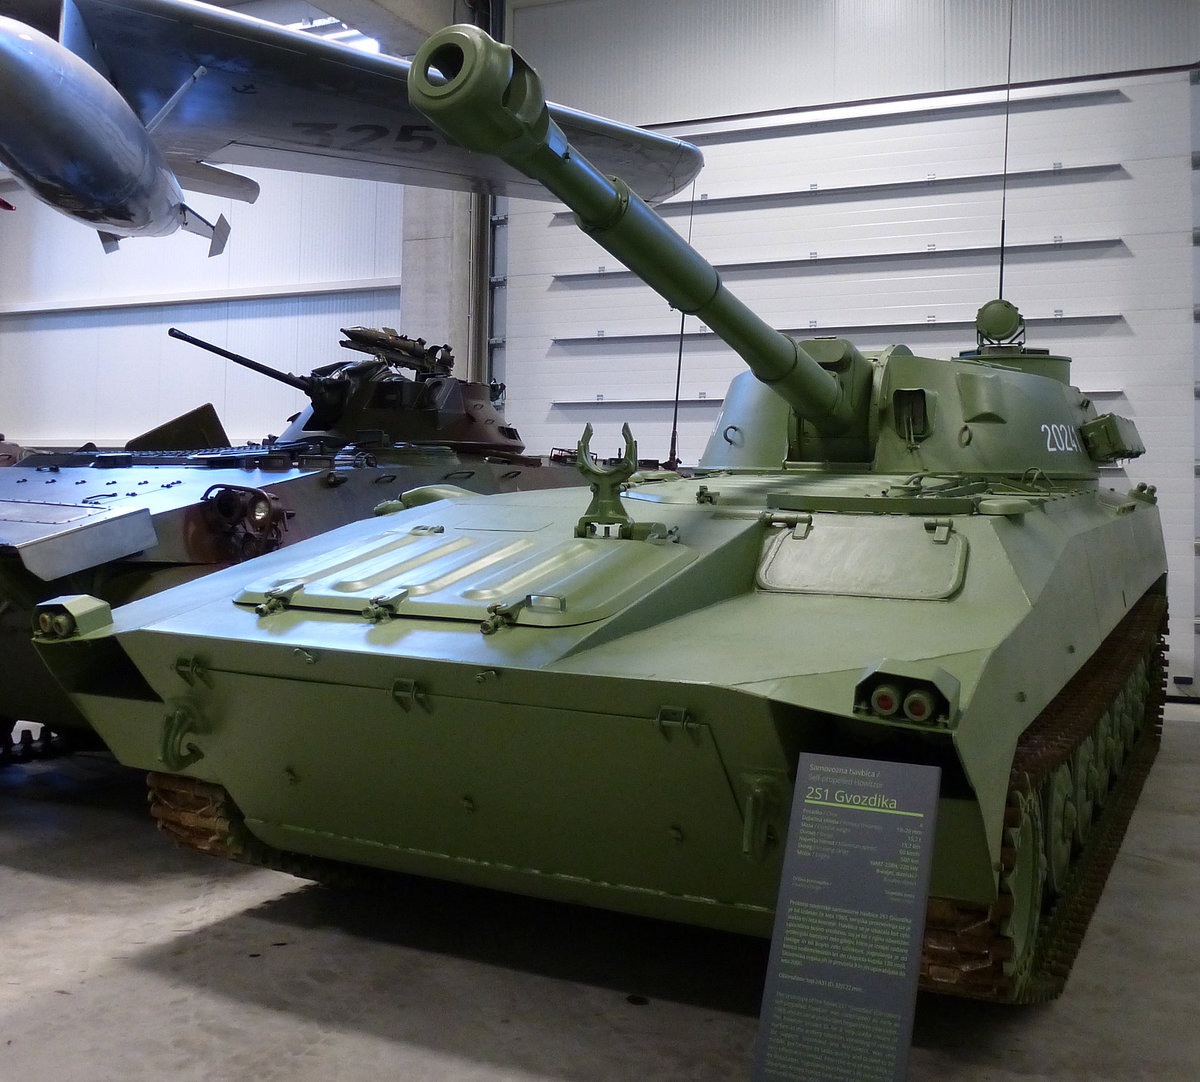 ZS1 Gvozdika, schwimmfähige 122mm-Selbstfahrlafette aus sowjetischer Produktion, gebaut ab 1972 und auch von der Jugoslawischen Volksarmee eingesetzt, 8-Zyl.Diesel mit 300PS, Vmax.60Km/h, Militärmuseum Pivka, Juni 2016